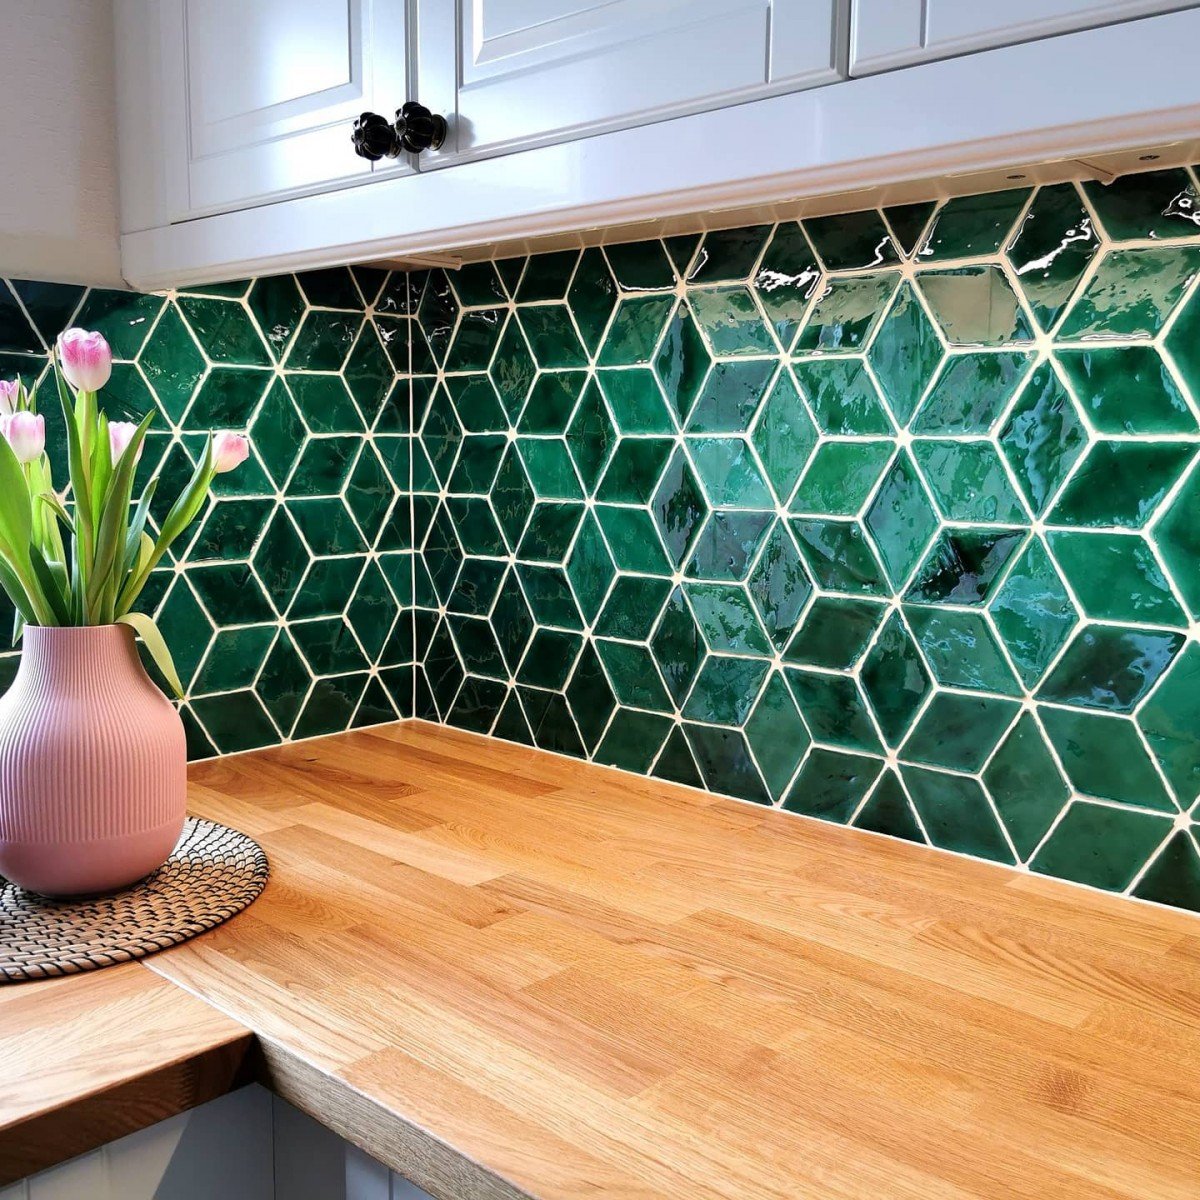 Glasierte Terracotta Wandfliesen - Farbe Grün, Referenz G305 - Format 8,5x14 cm, diamond - Küche